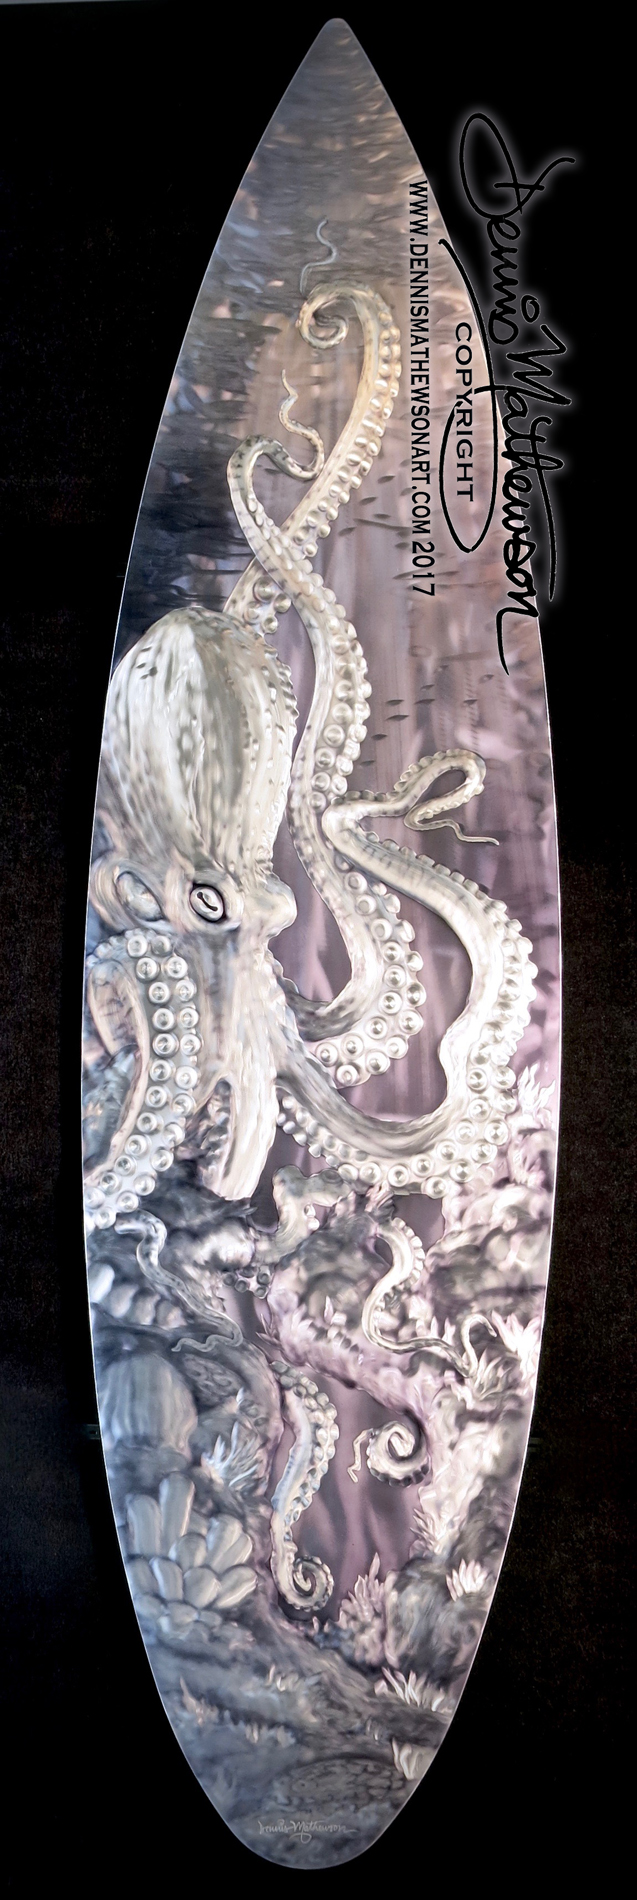 original art on 18"x70" aluminum surfboard shape